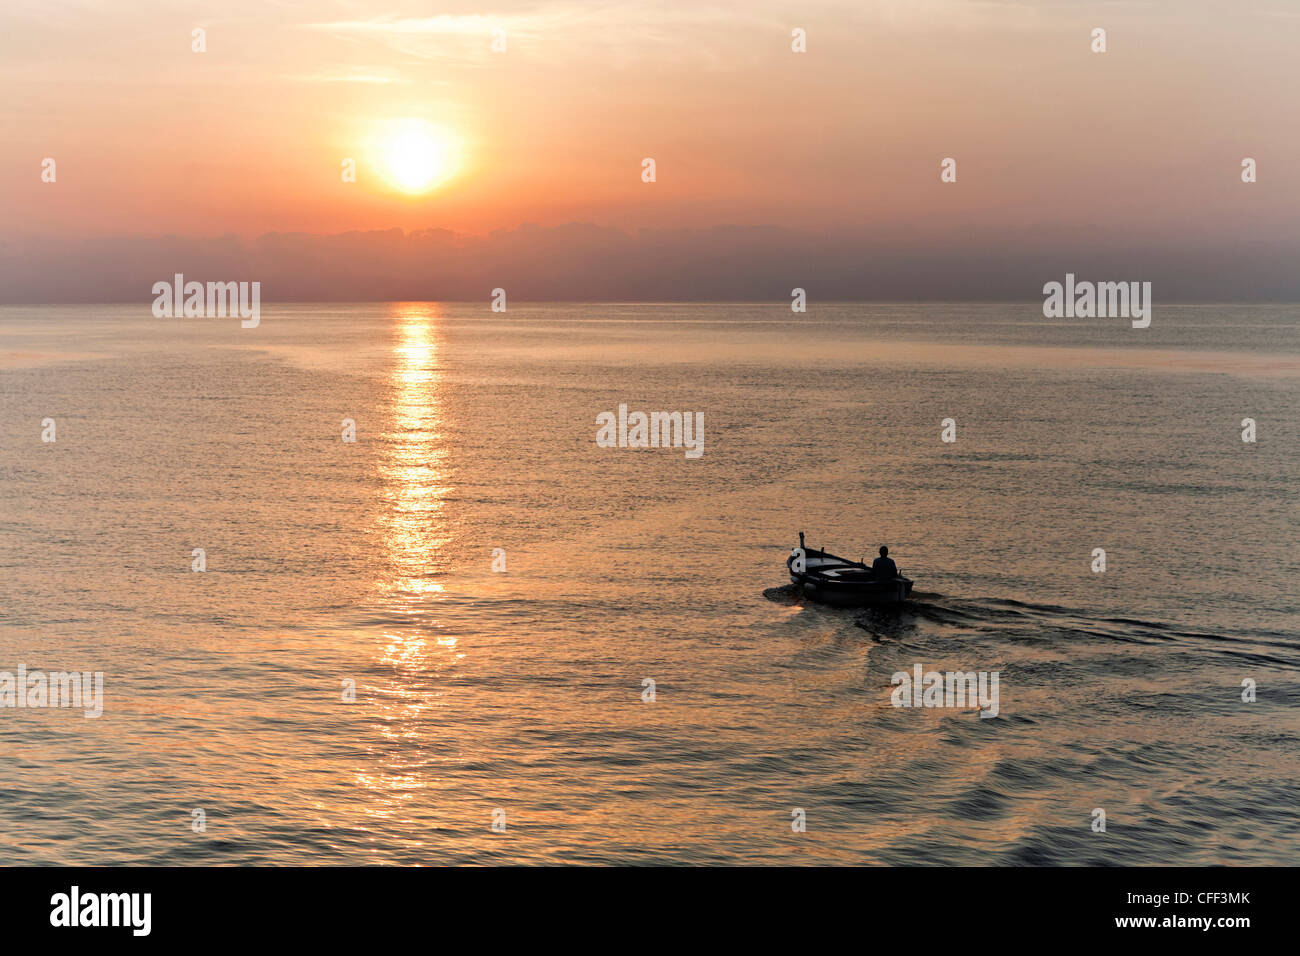 Bateau de pêcheur au lever du soleil à l'approche de la Mer Tyrrhénienne au large de Bastia, Corse, France Banque D'Images